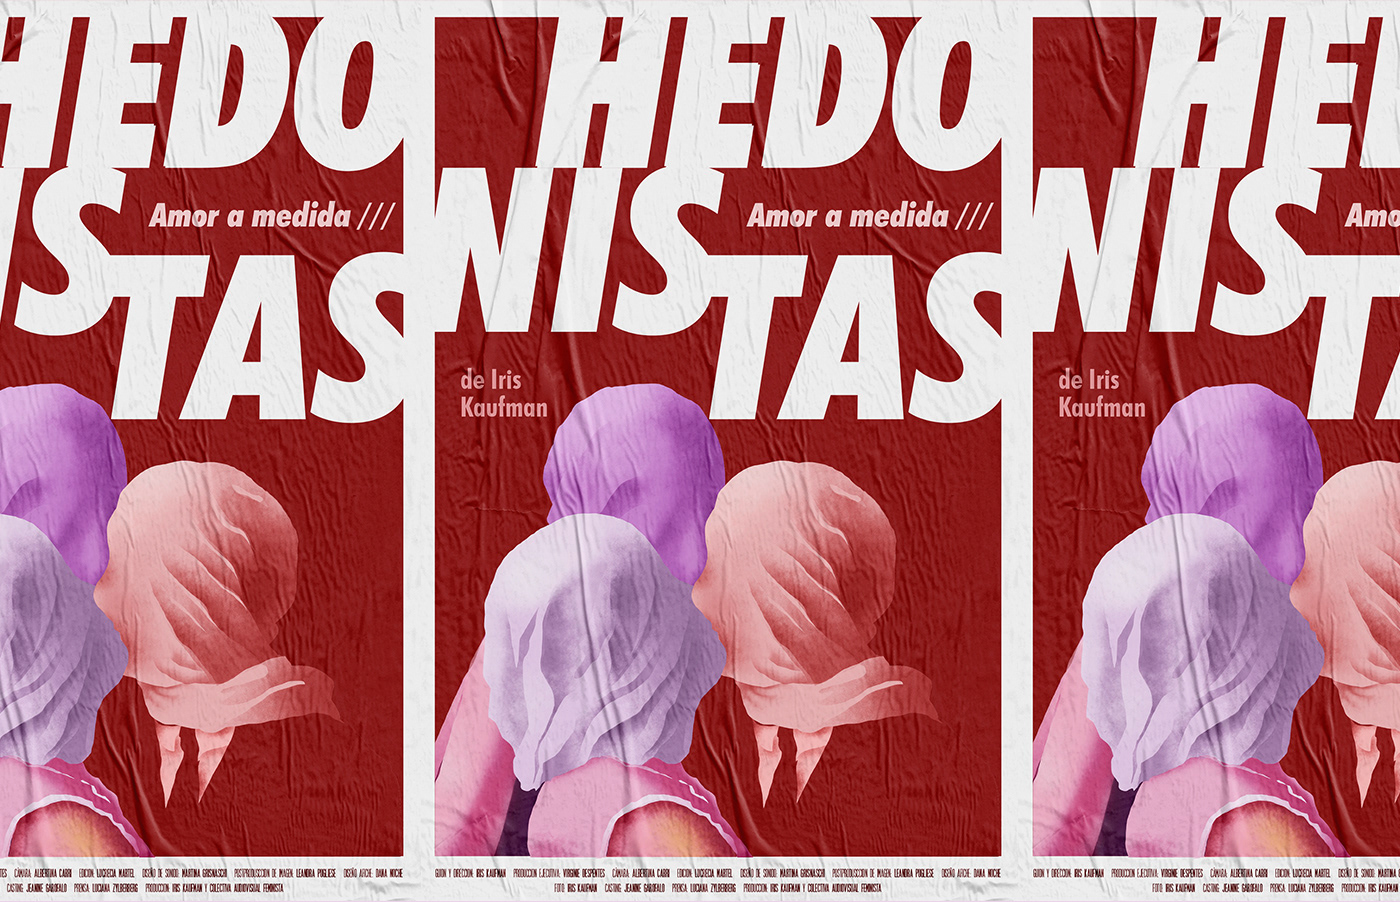 campaign Campaña grafica Hedonistas identidad poster series sistema gráfico